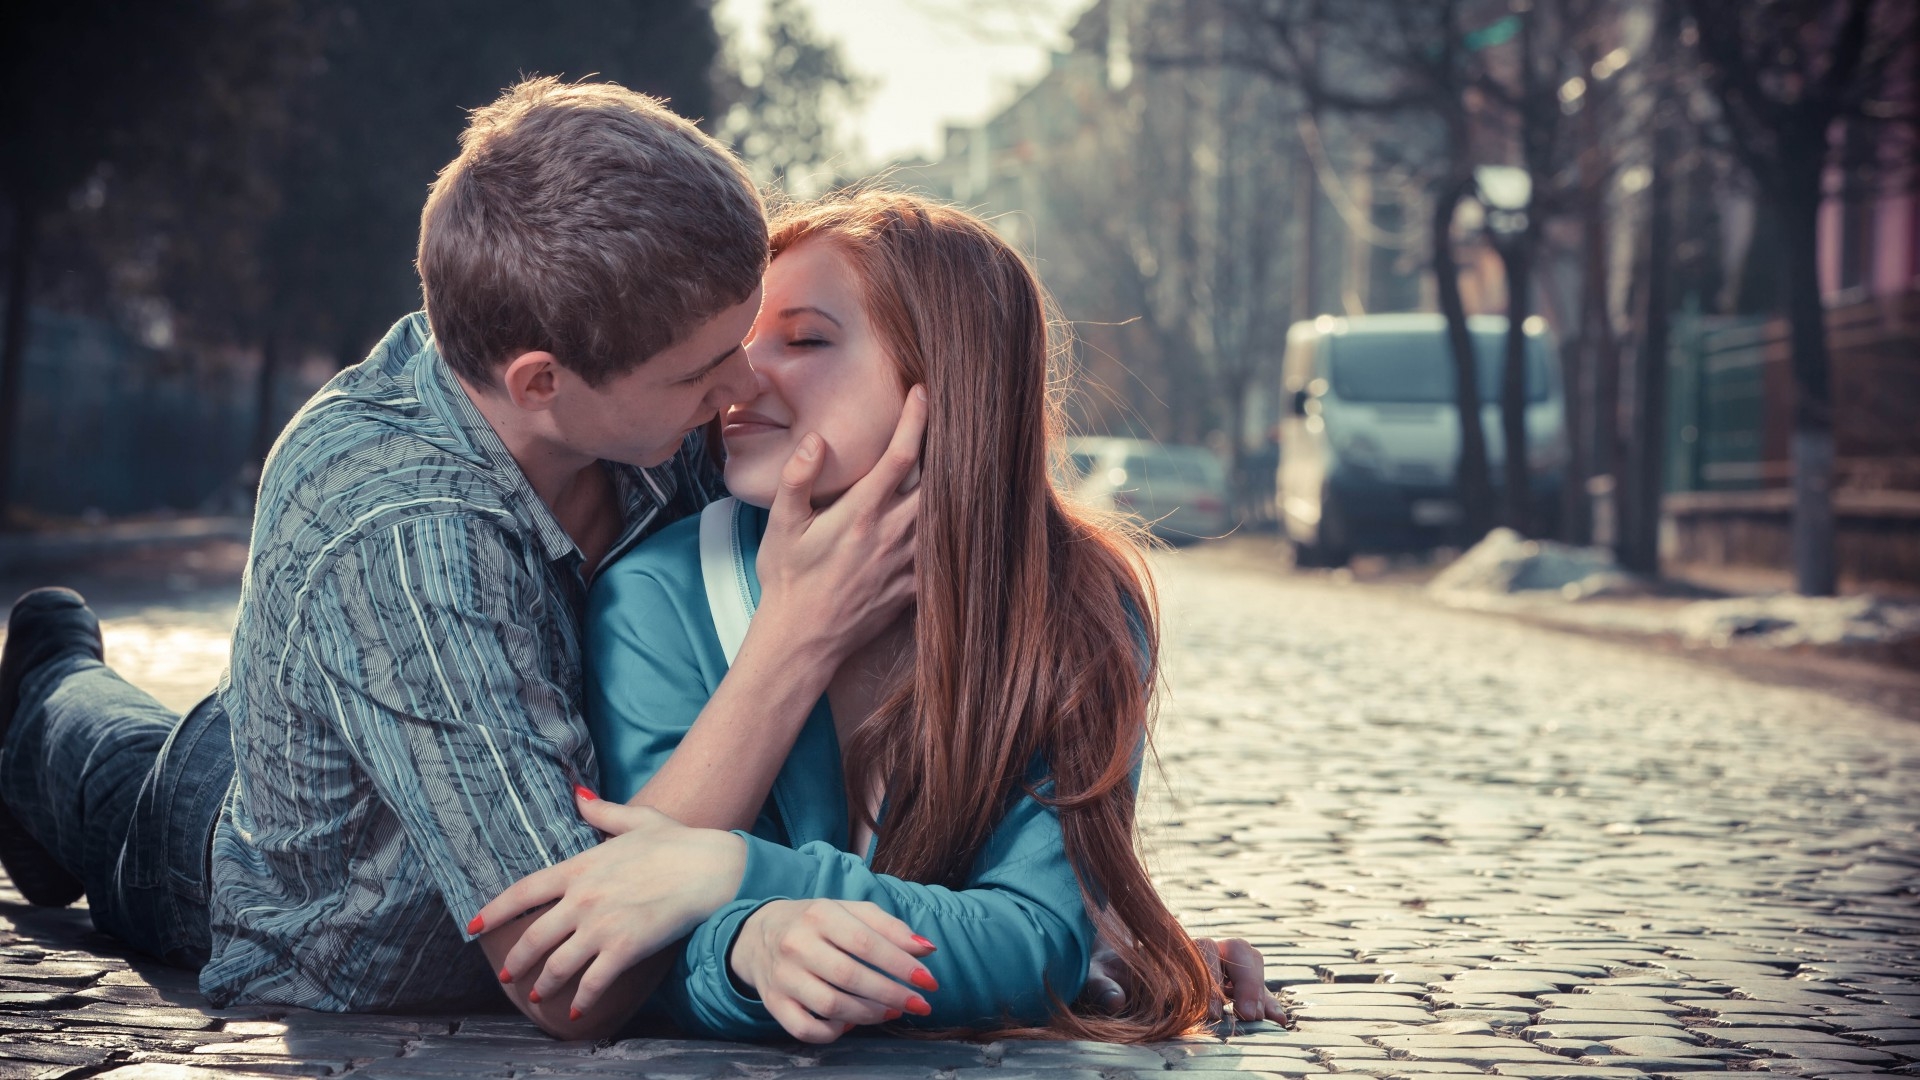 fonds d'écran romantiques de baiser,photographier,romance,amour,interaction,la photographie